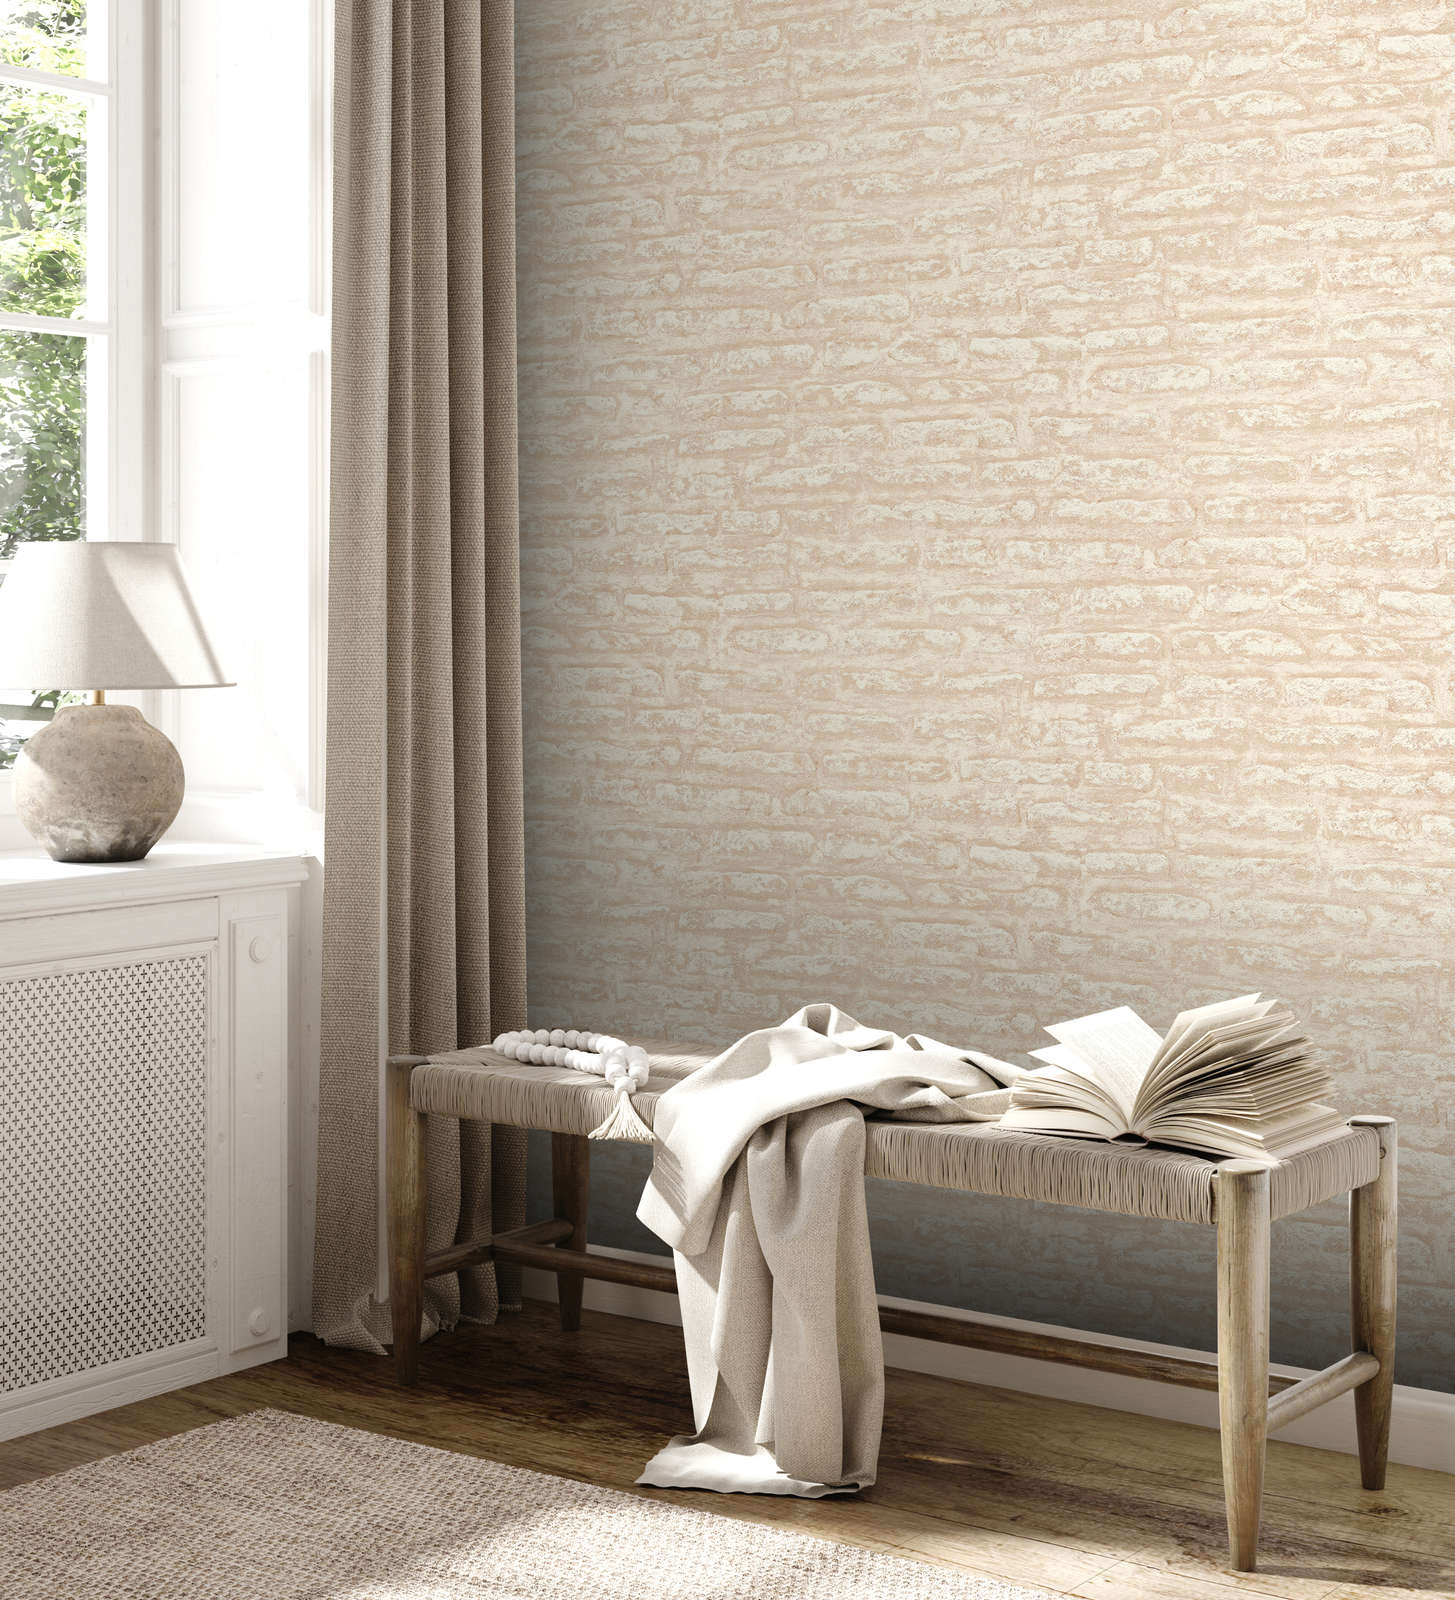             Vliesbehang met abstract pleisterpatroon mat - beige, wit
        